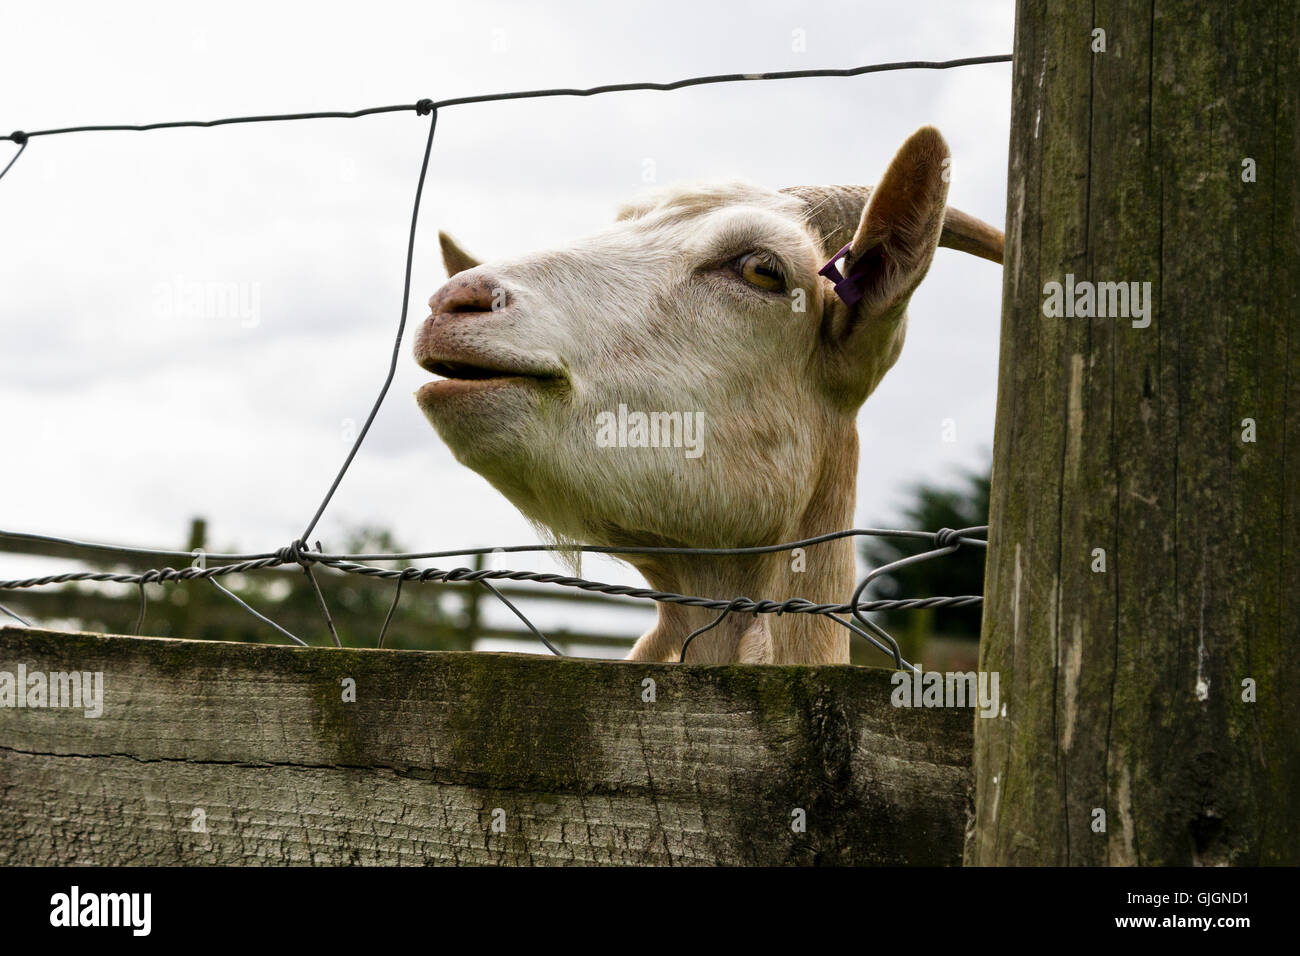 A goat at Grimsbury community farm, Kingswood, South Gloucestershire, UK Stock Photo